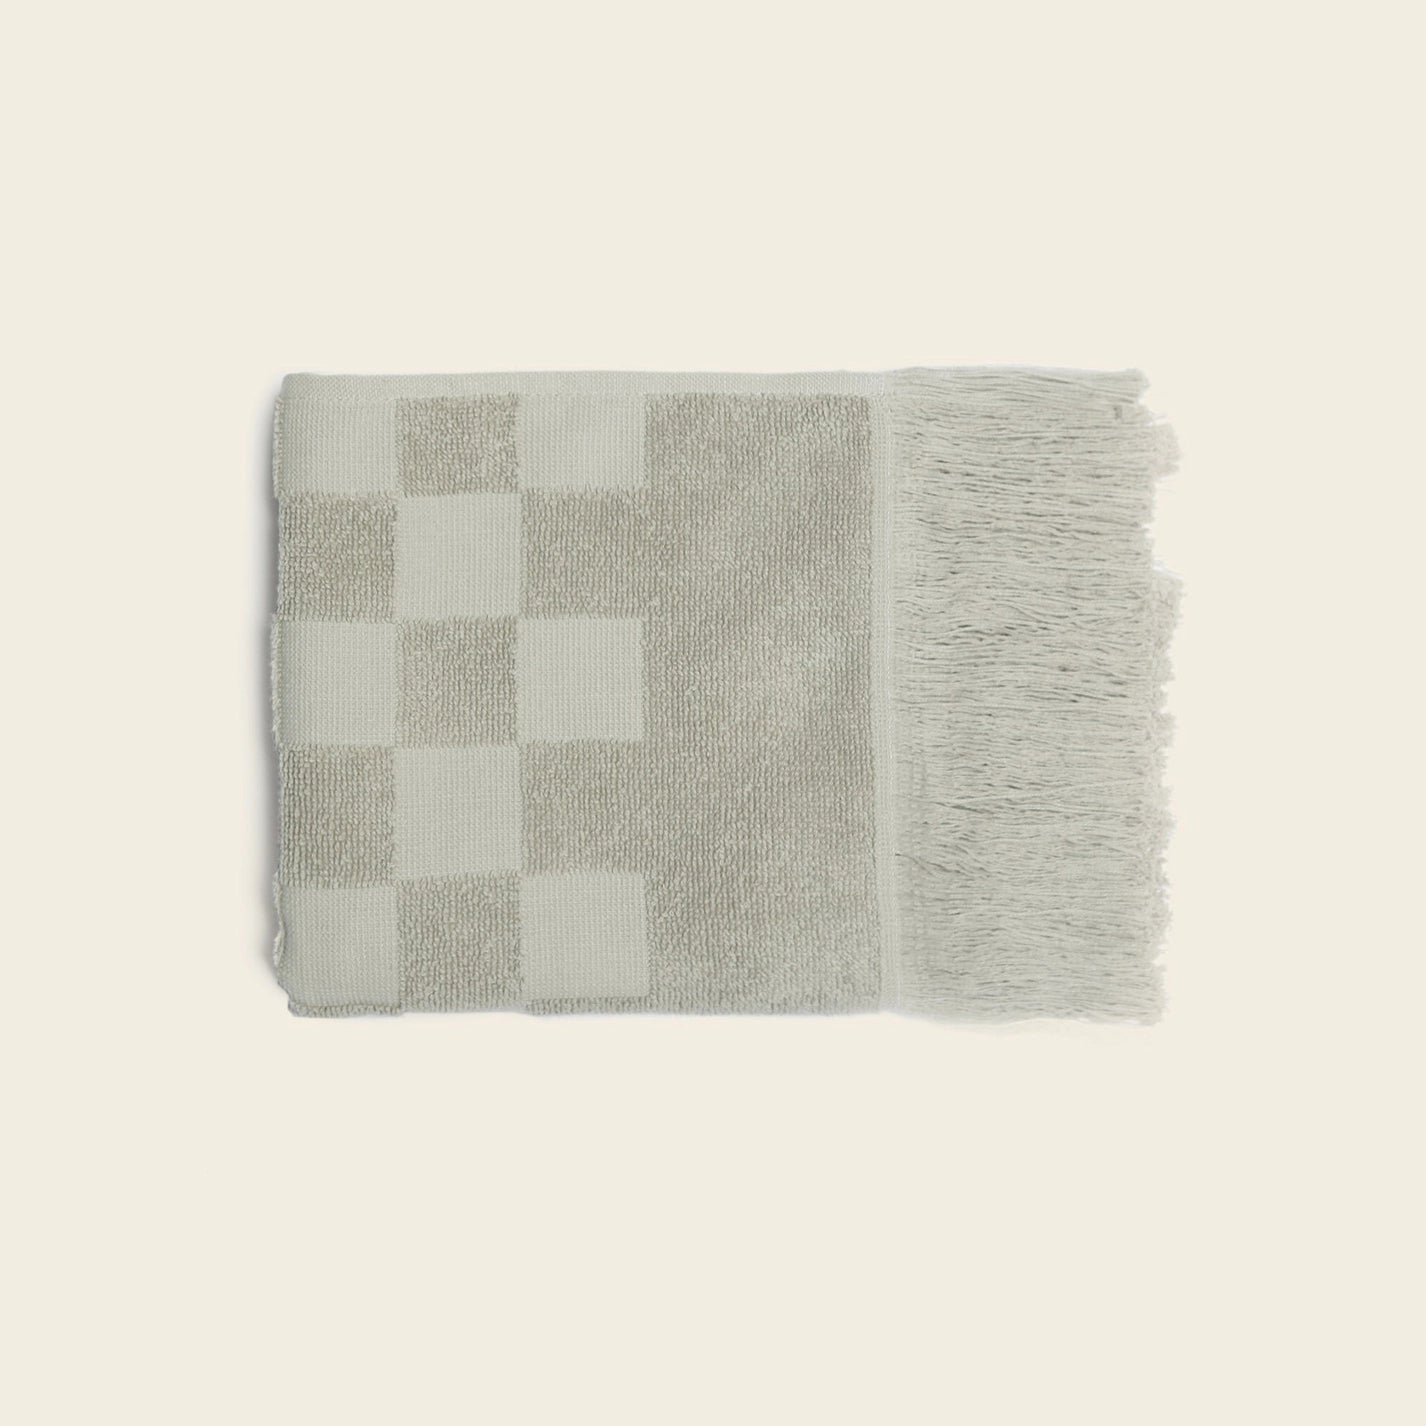 Organic Checkered Hand Towel